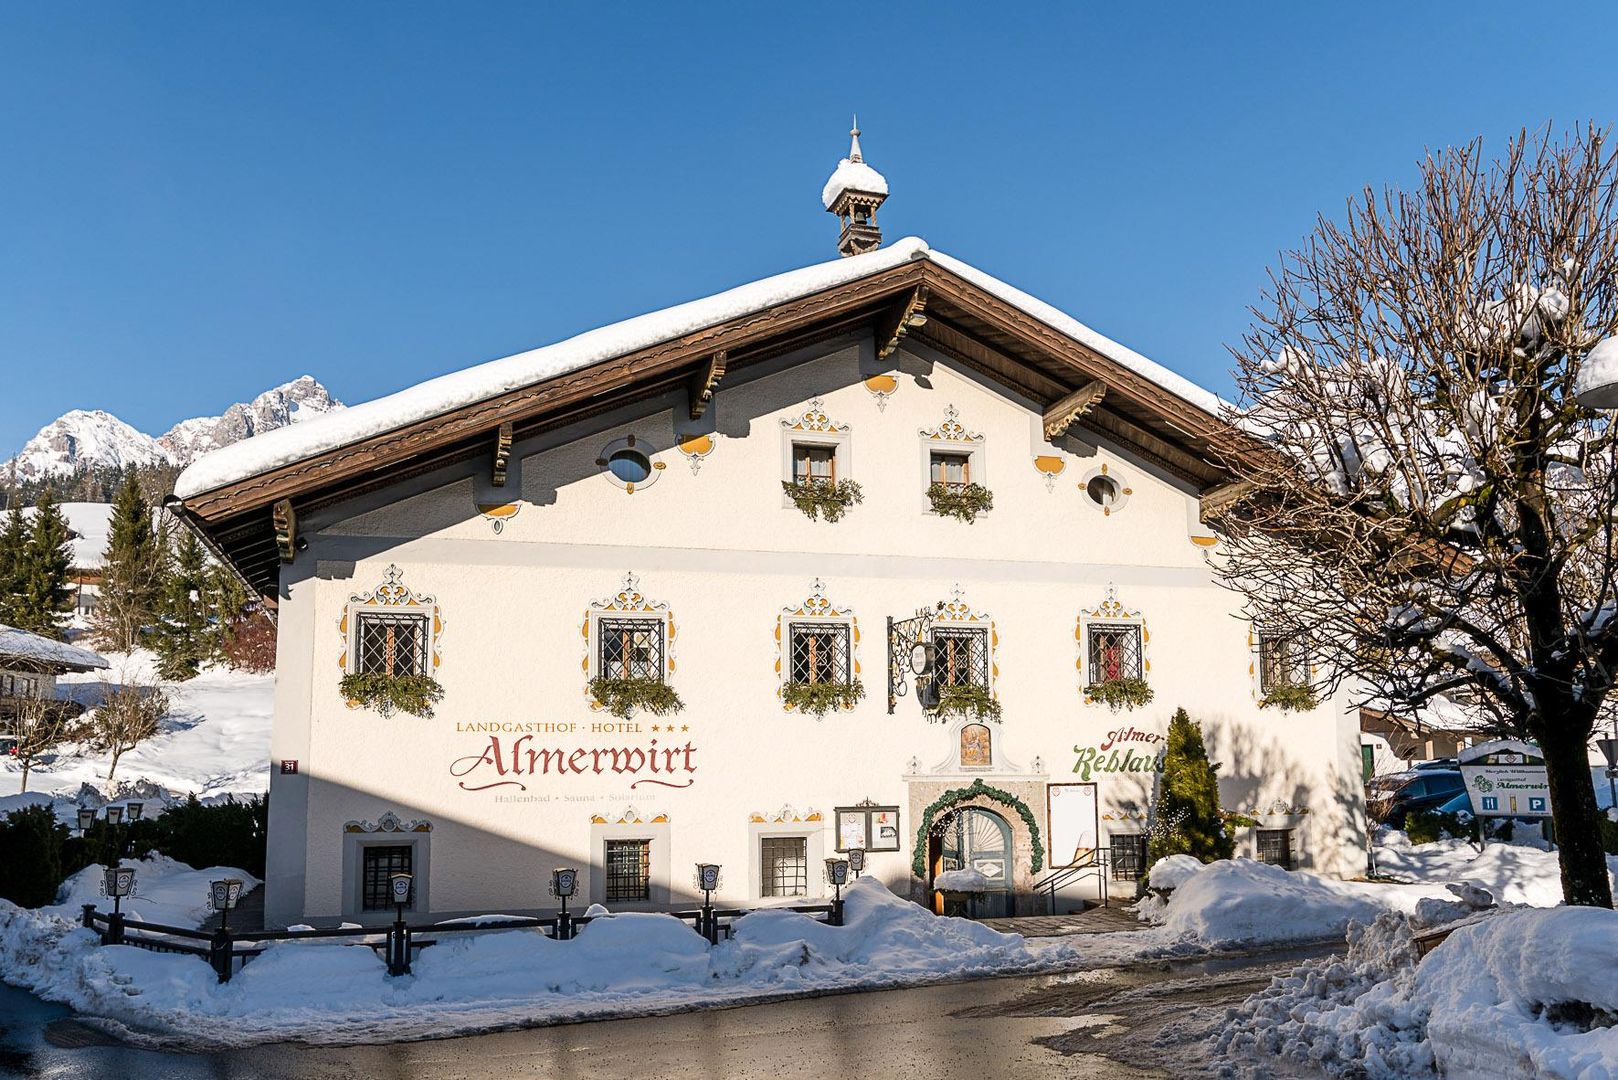 Meer info over Landgasthof Almerwirt  bij Wintertrex